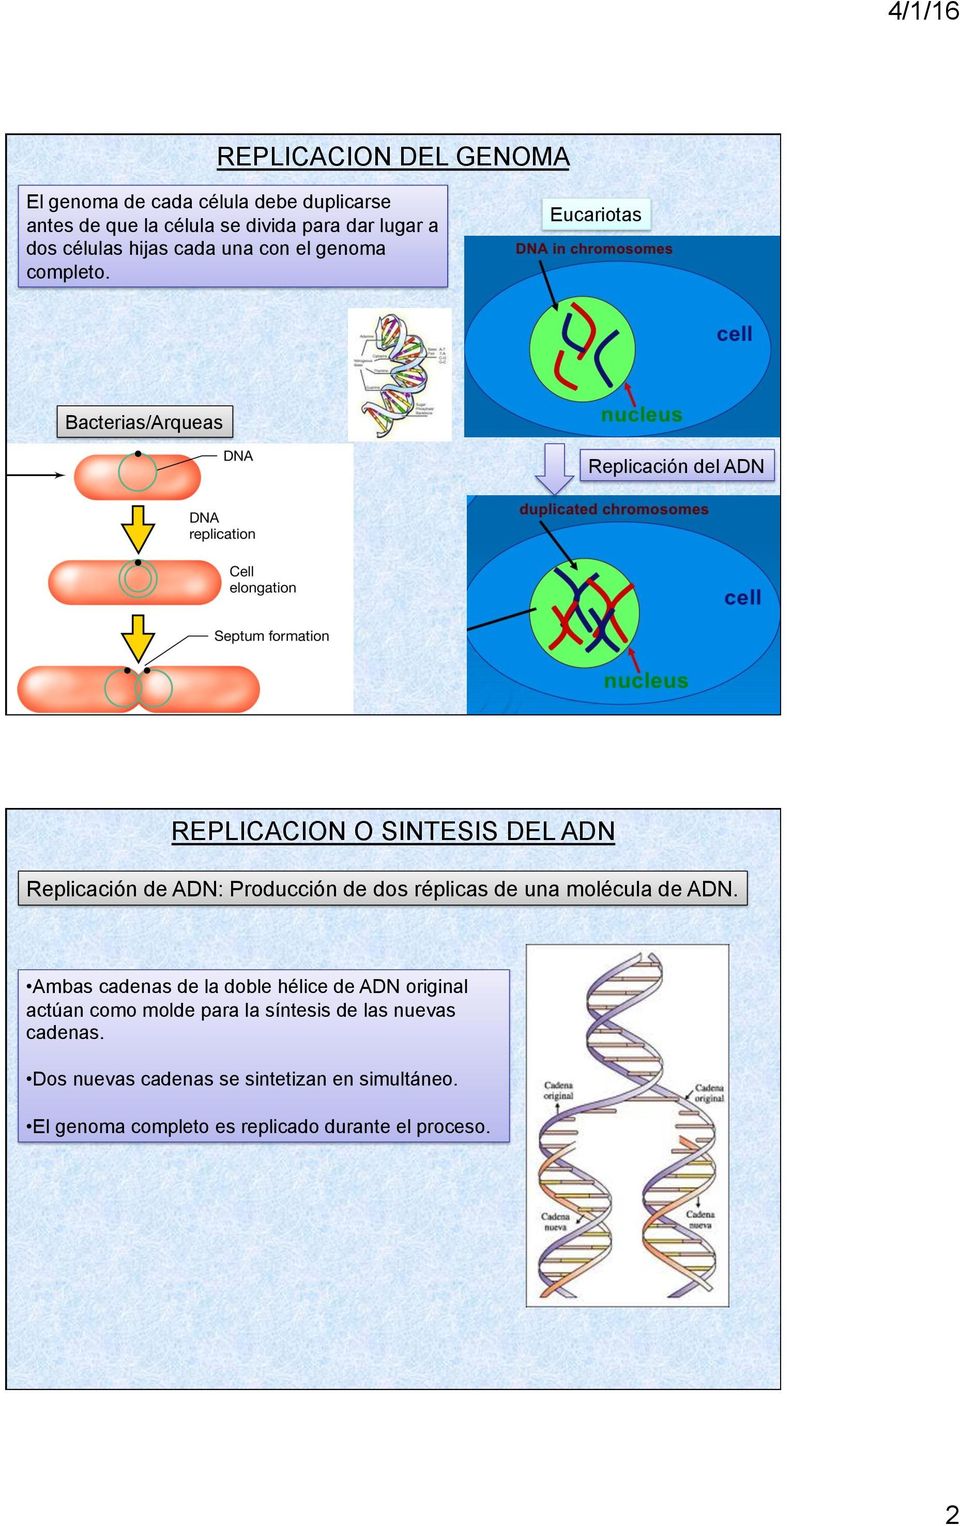 Eucariotas Bacterias/Arqueas Replicación del ADN REPLICACION O SINTESIS DEL ADN Replicación de ADN: Producción de dos réplicas de